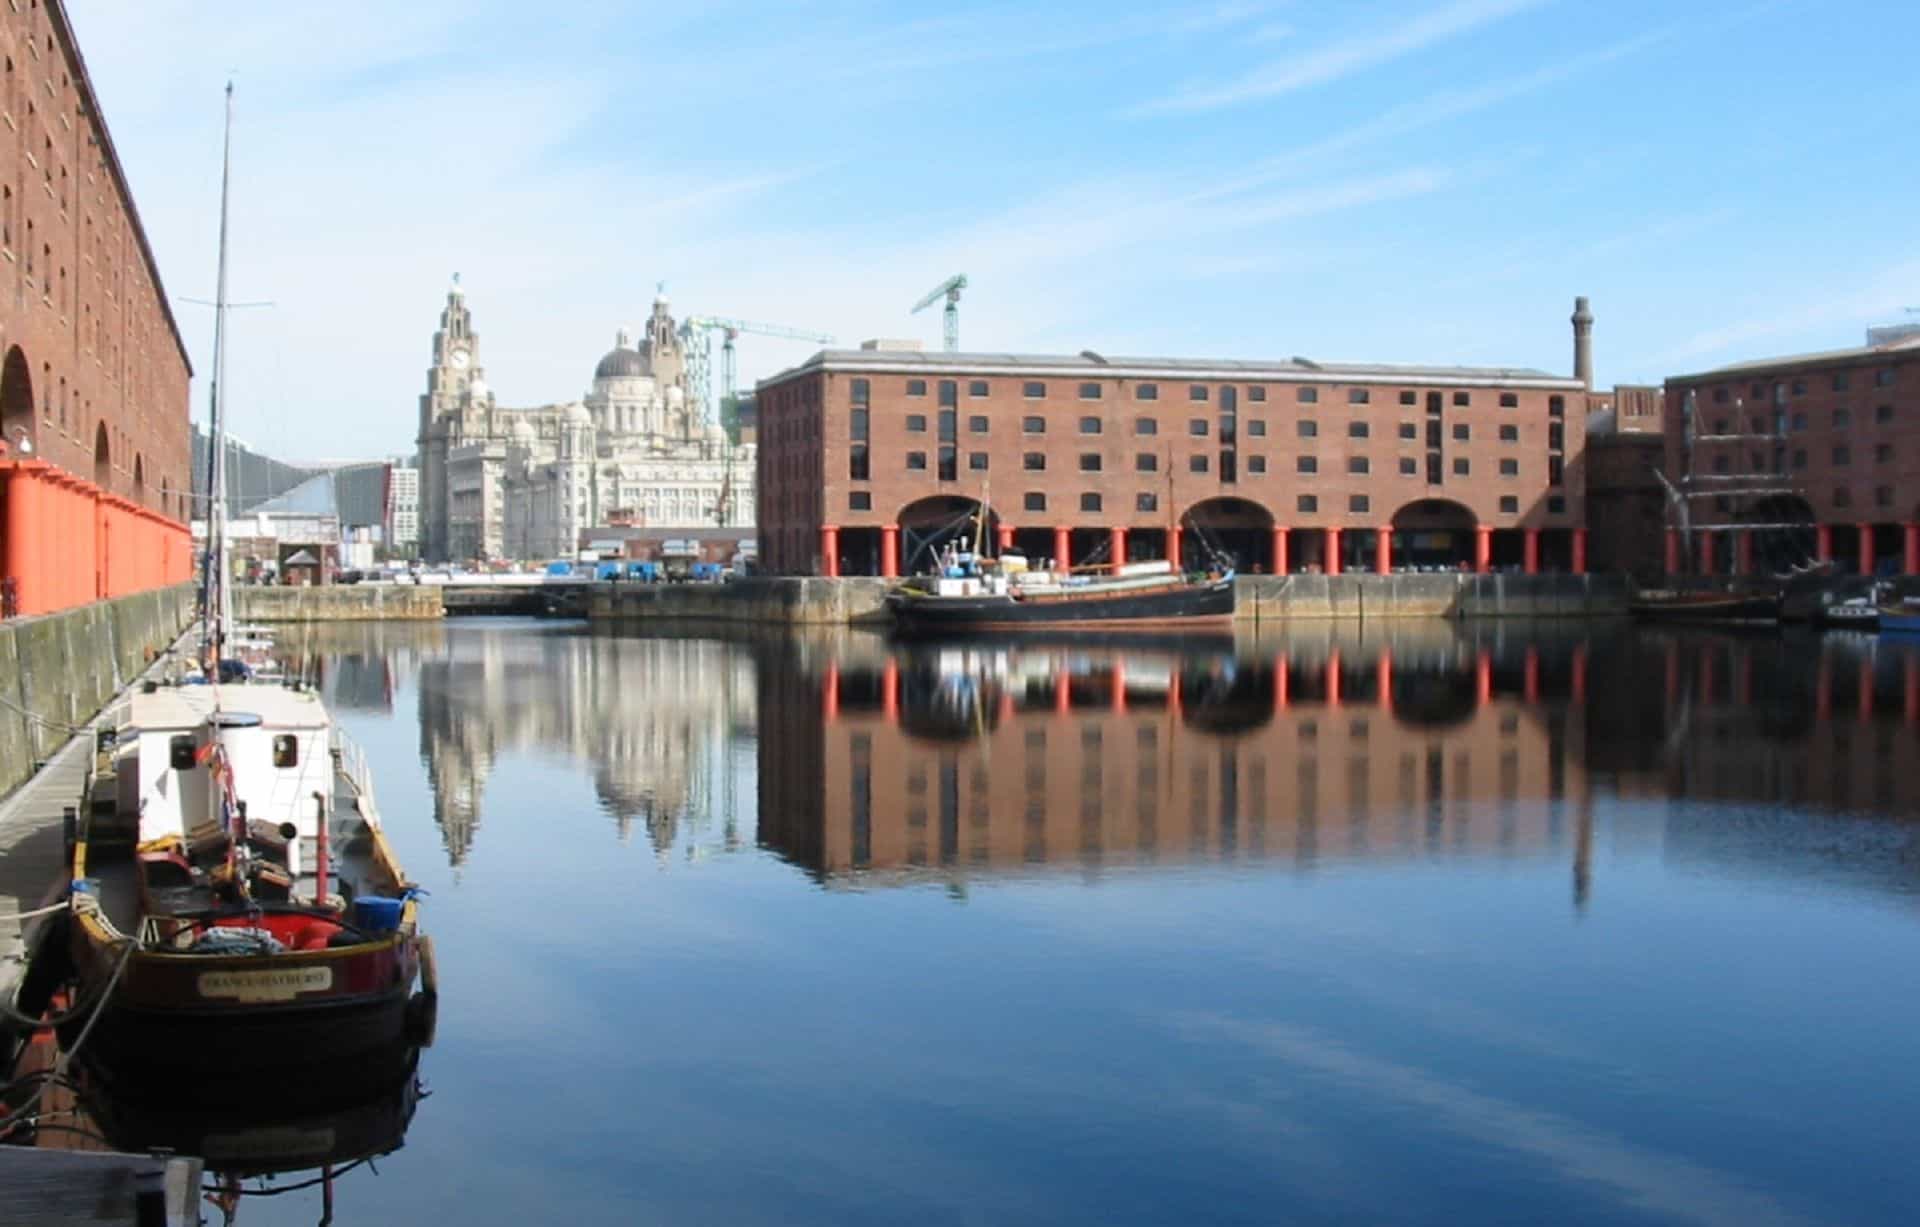 Royal Albert Dock Liverpool in UK